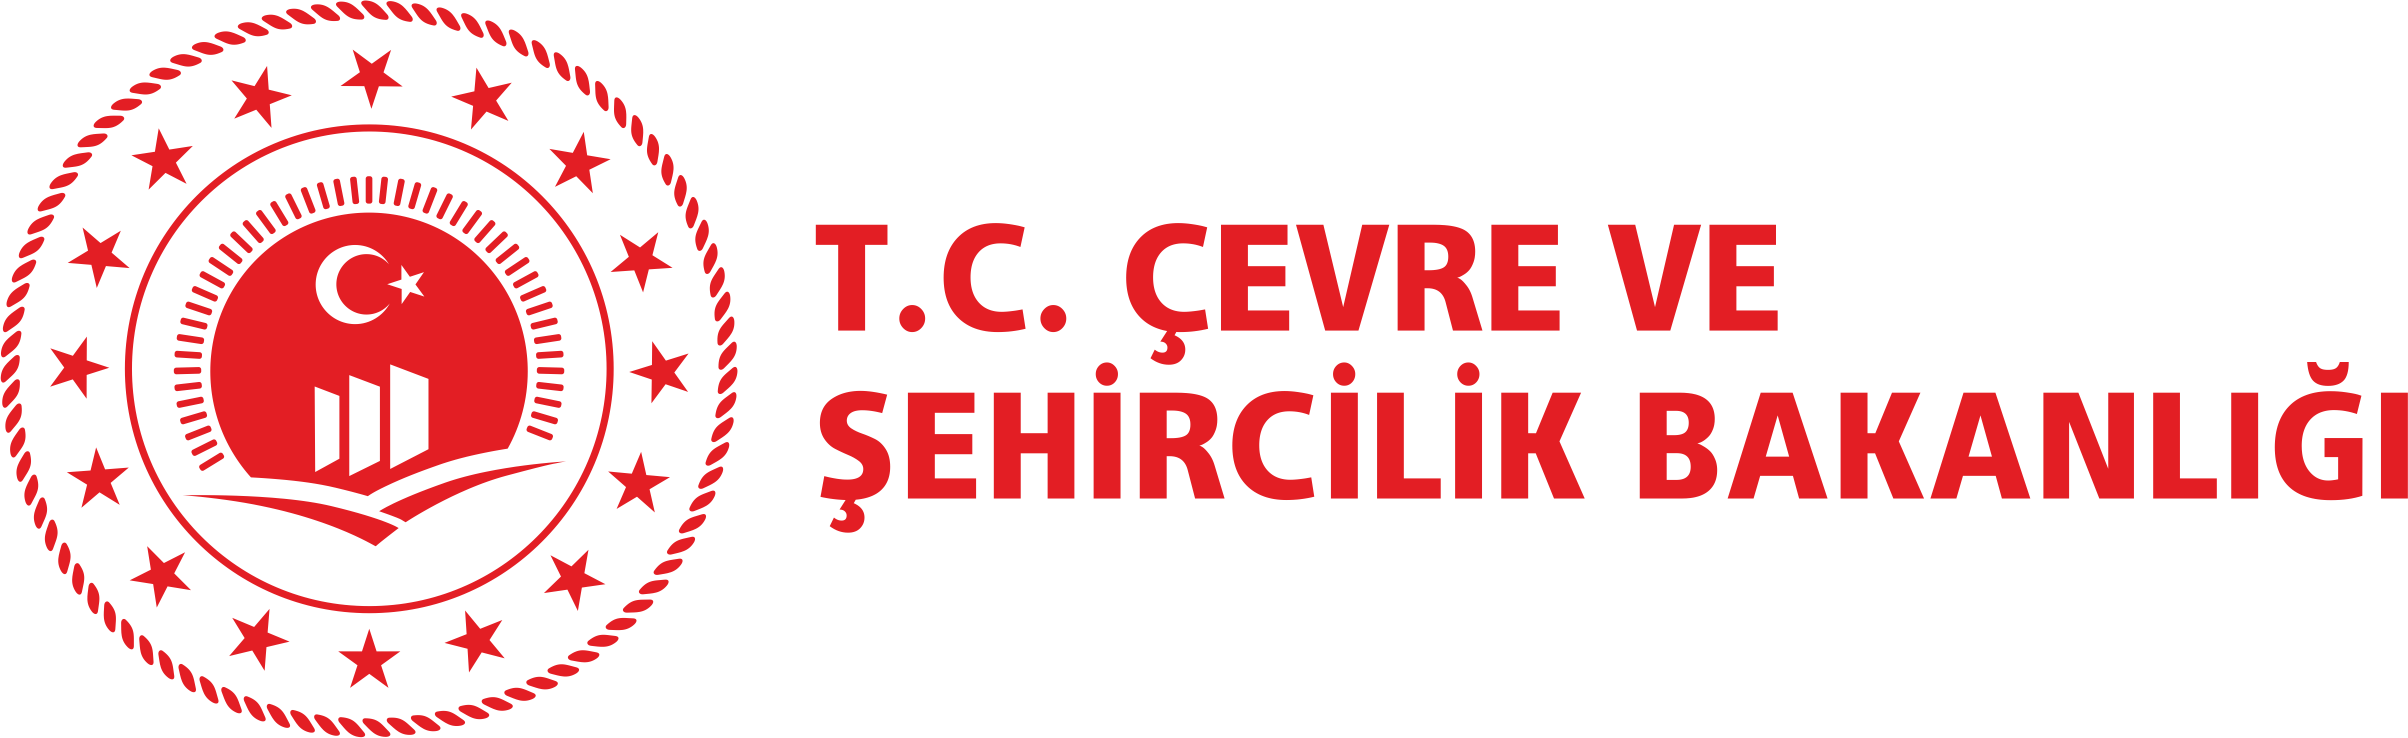 T.C. Çevre ve Şehircilik Bakanlığı Yeni Logo 2018 Vektörel 2